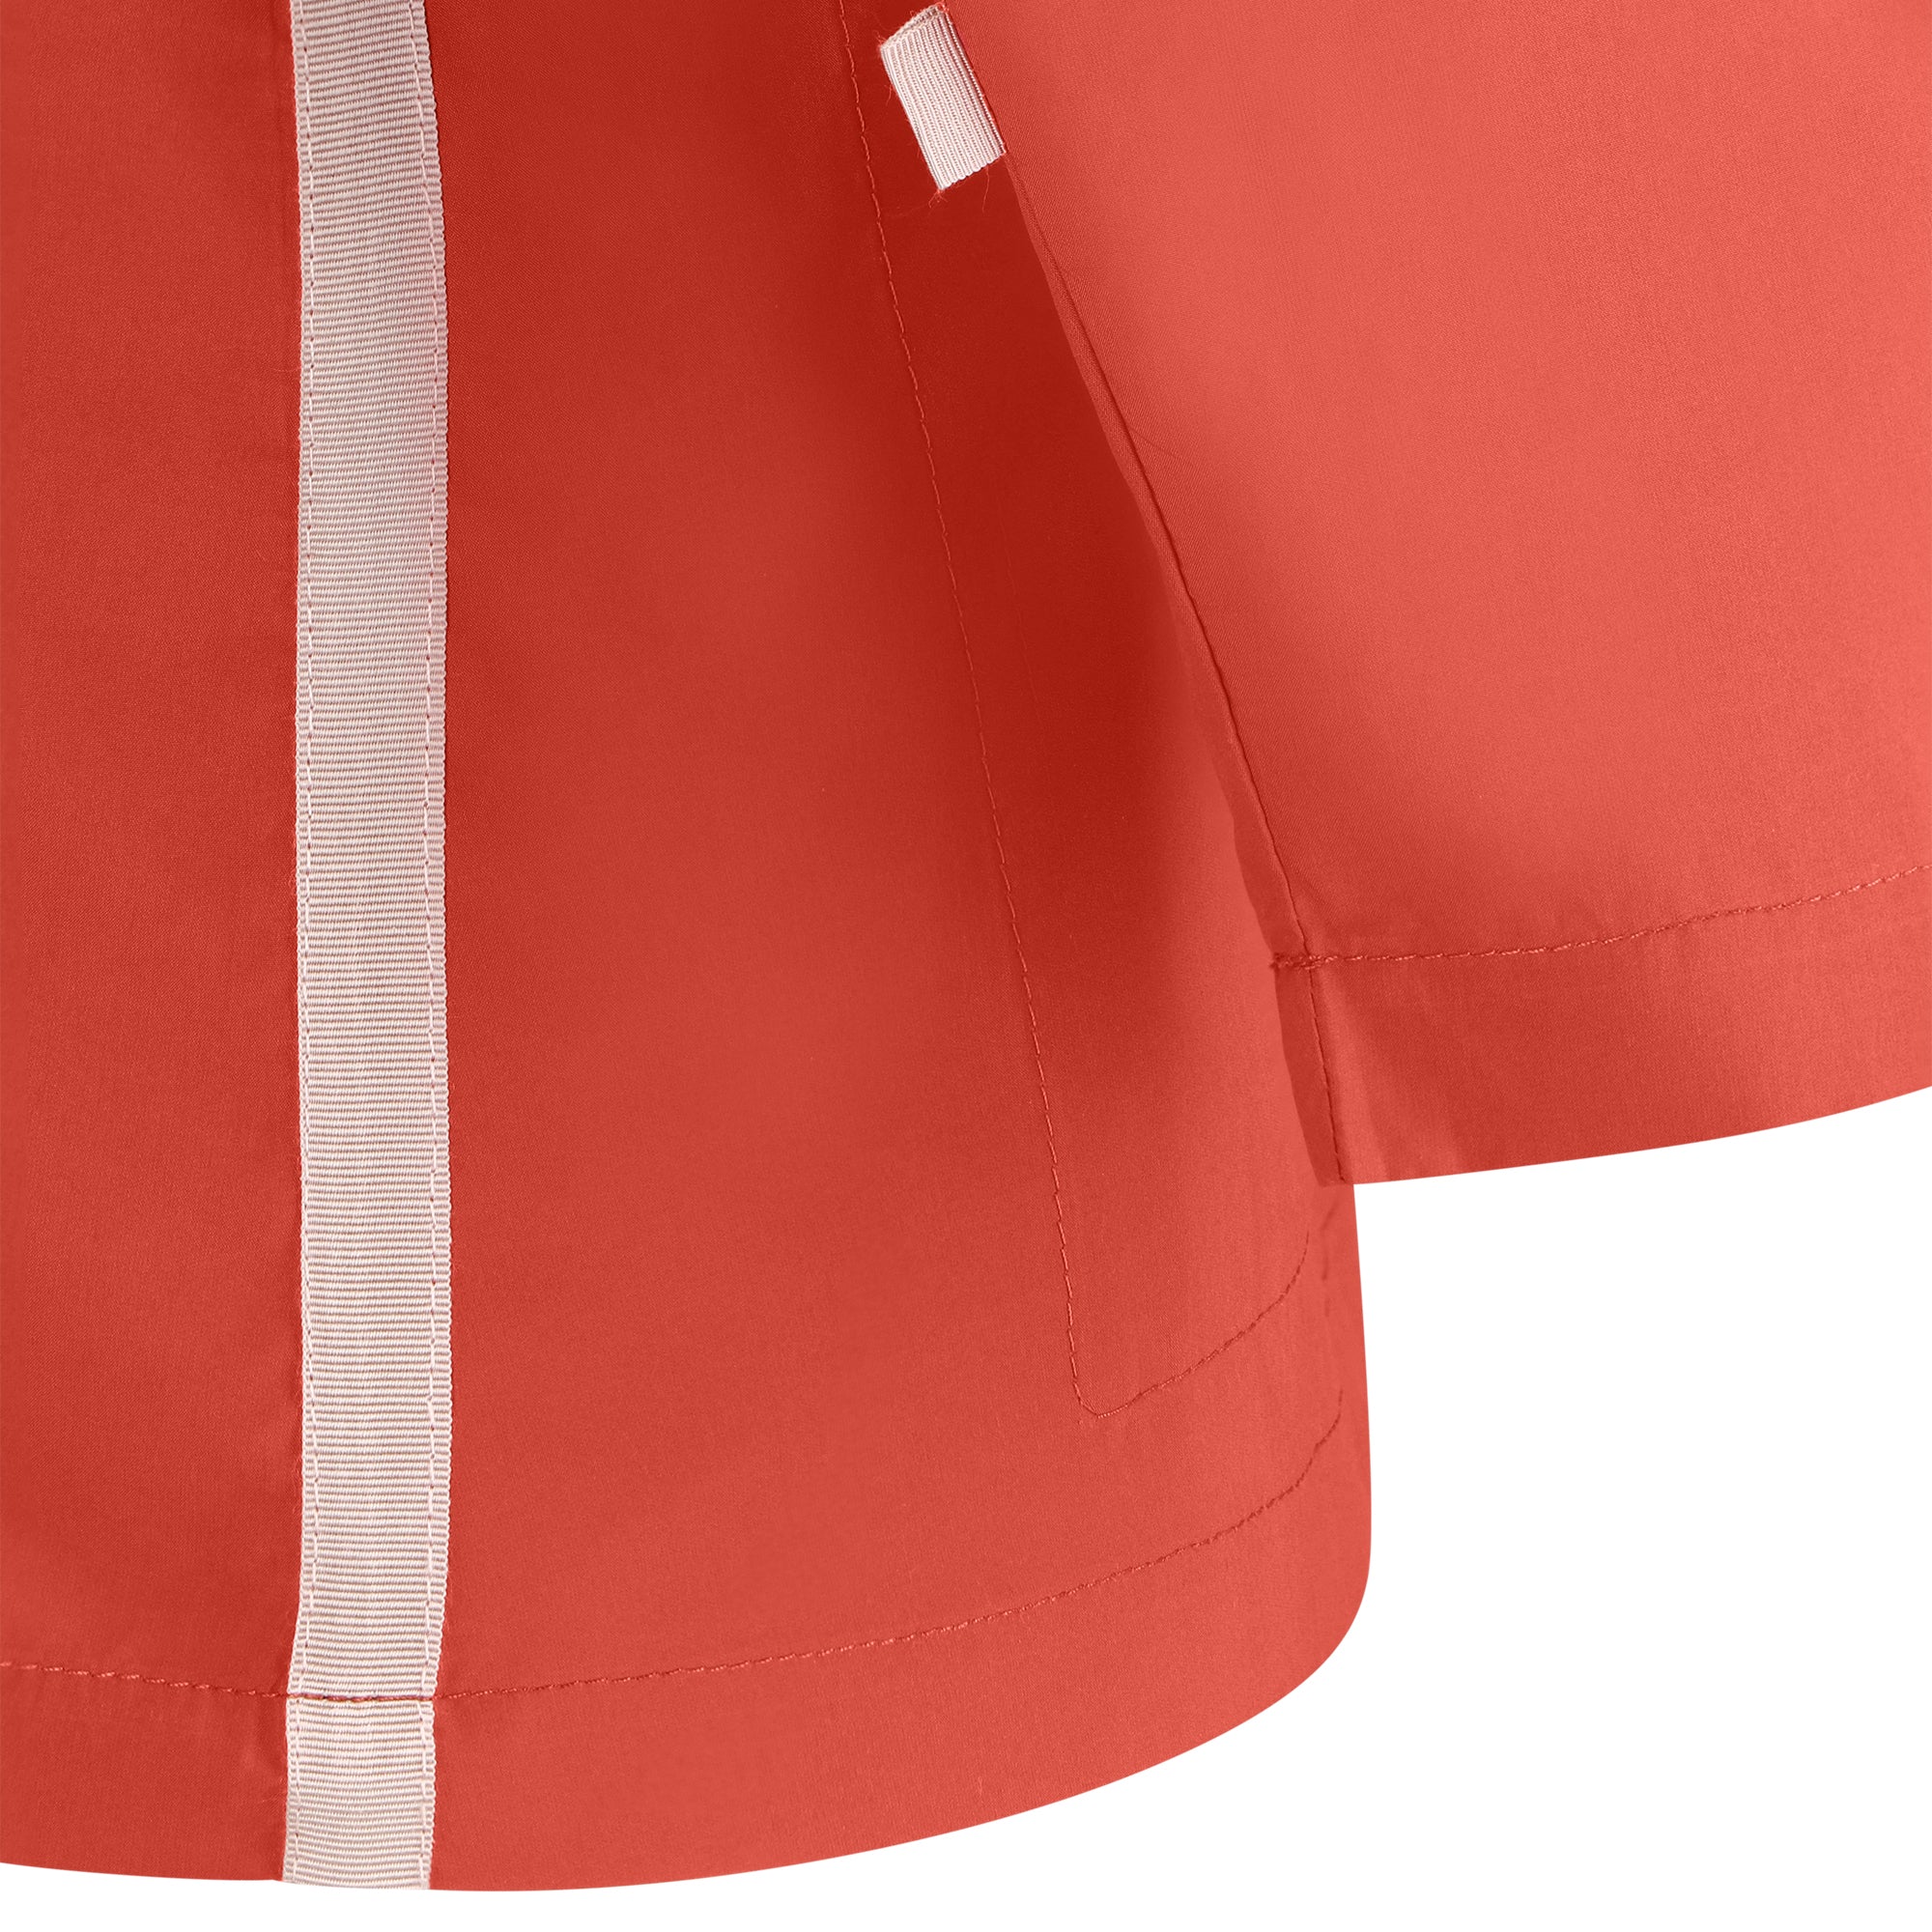 Bise raincoat - Orange color - sleeve detail